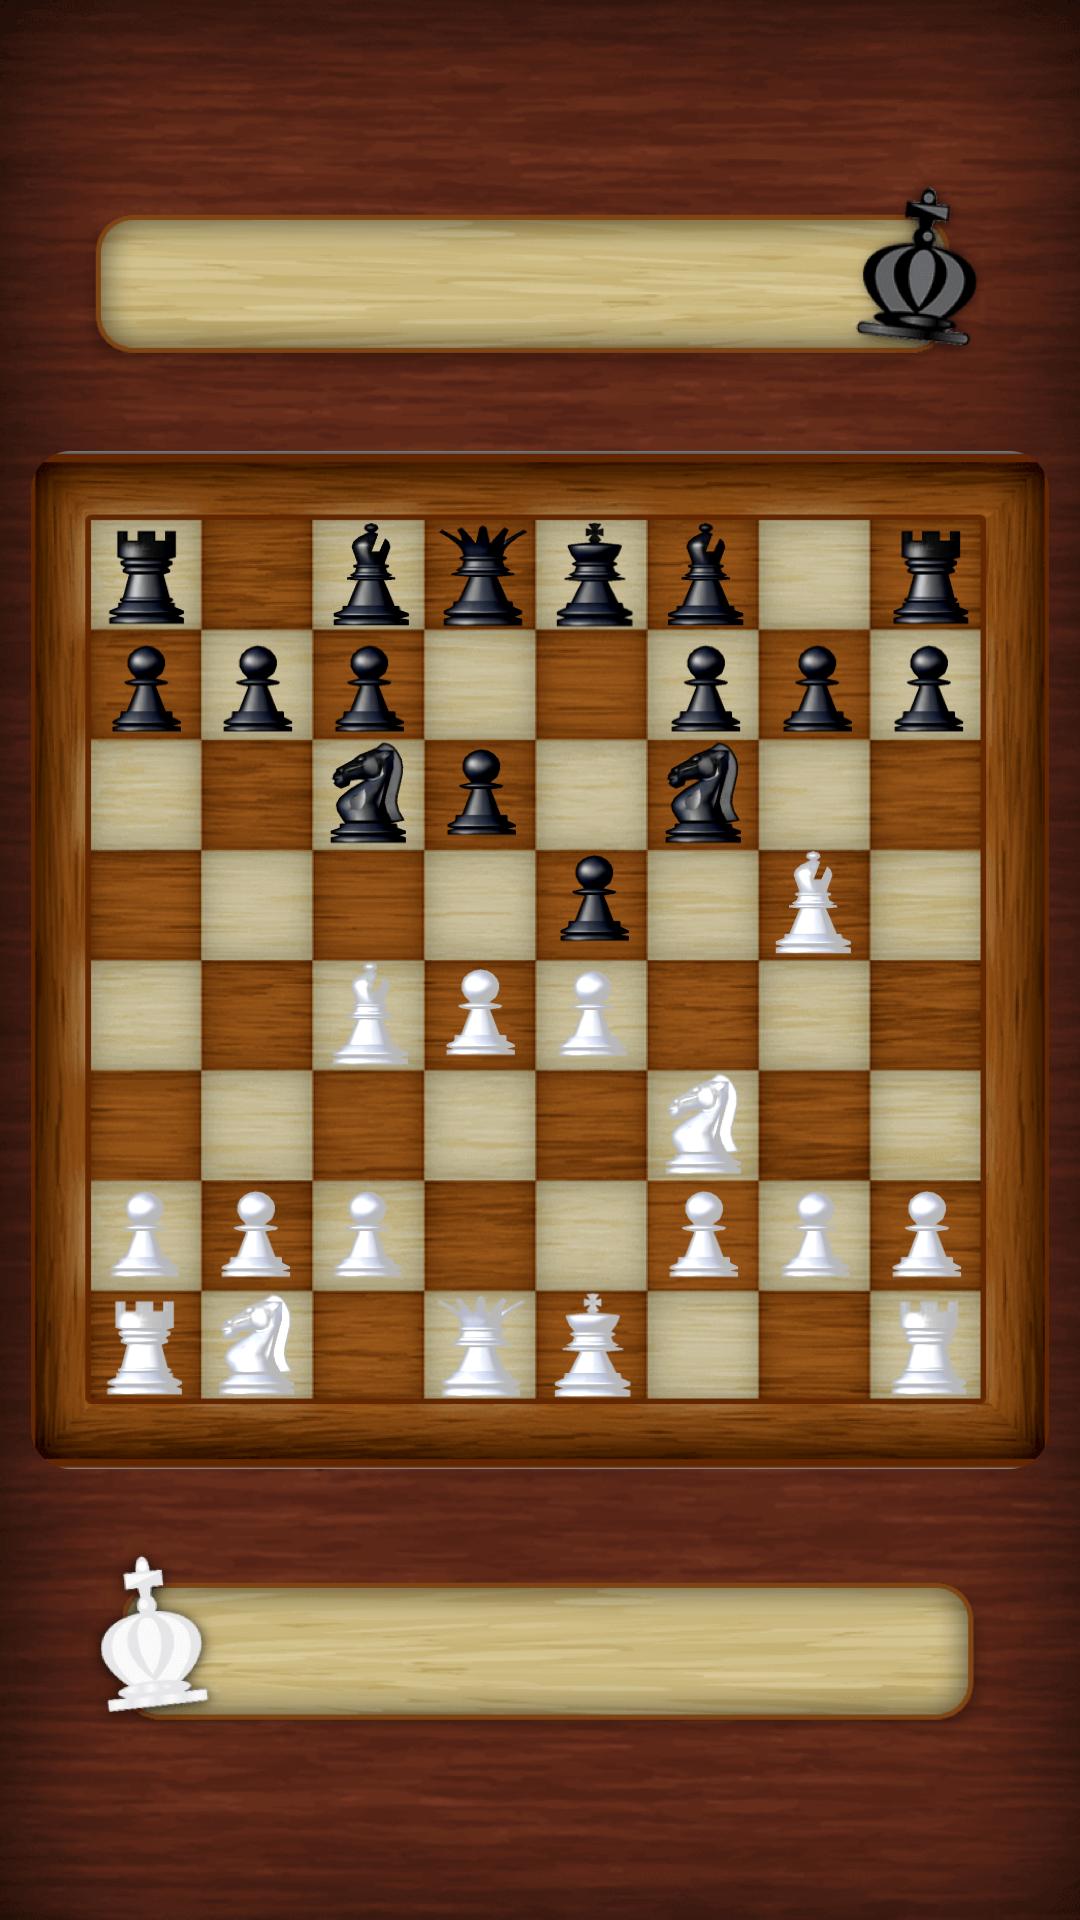 Chess Strategy board game 3.0.6 Screenshot 3